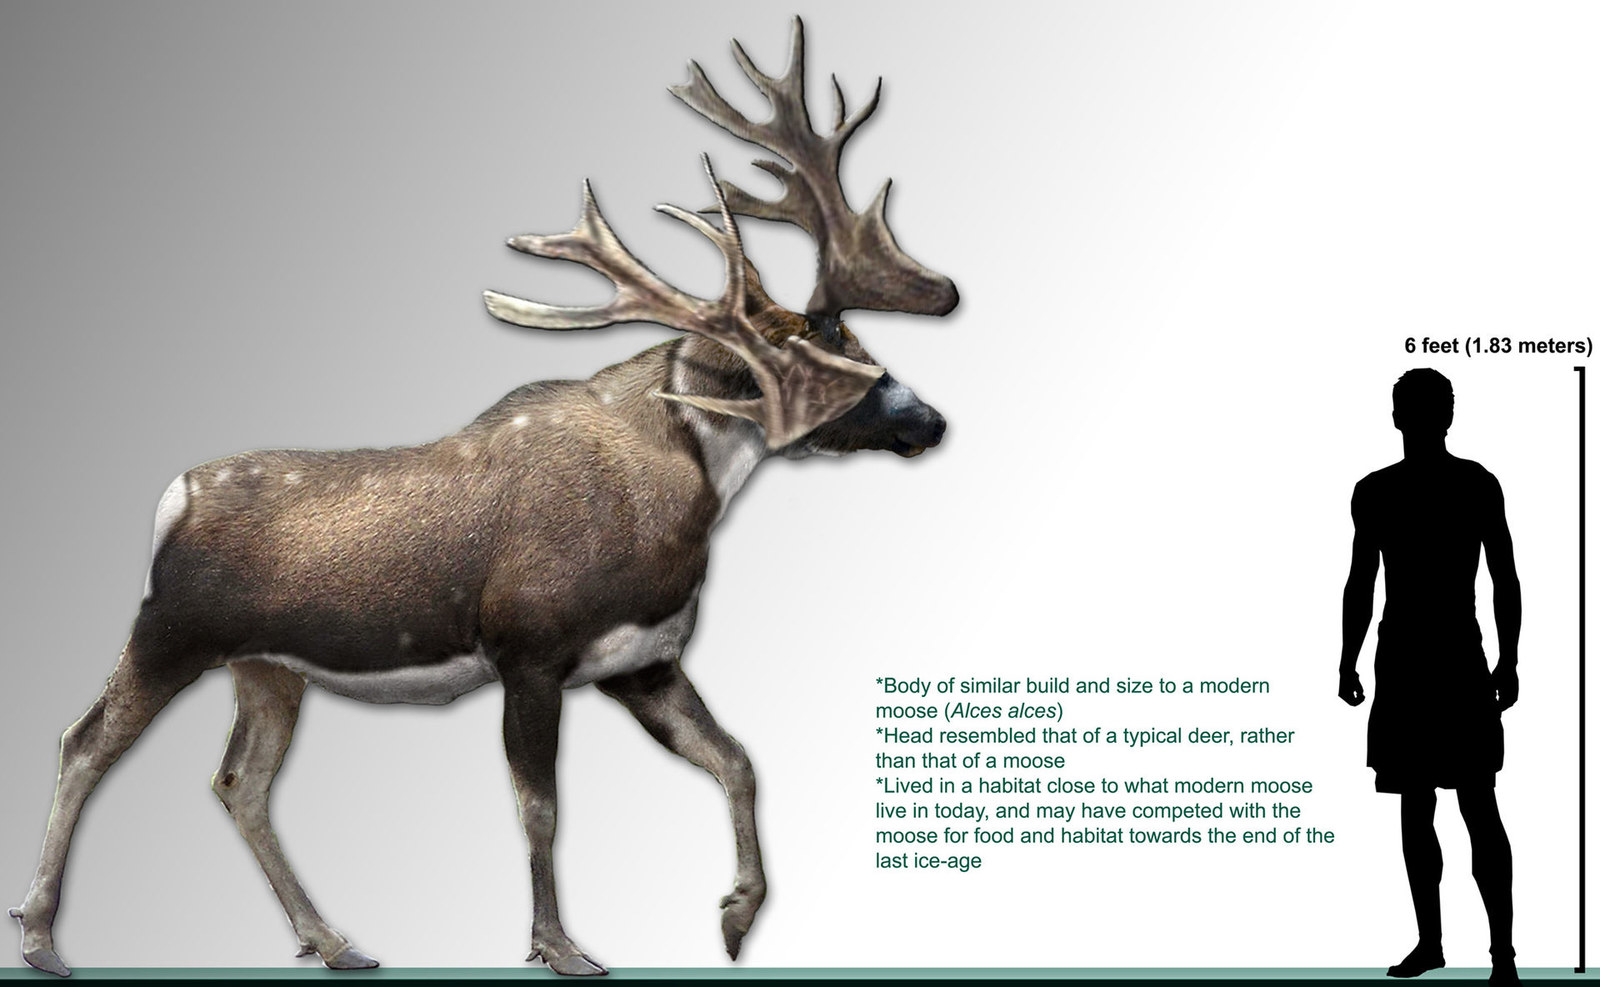 Résultat de recherche d'images pour "moose compared to human"